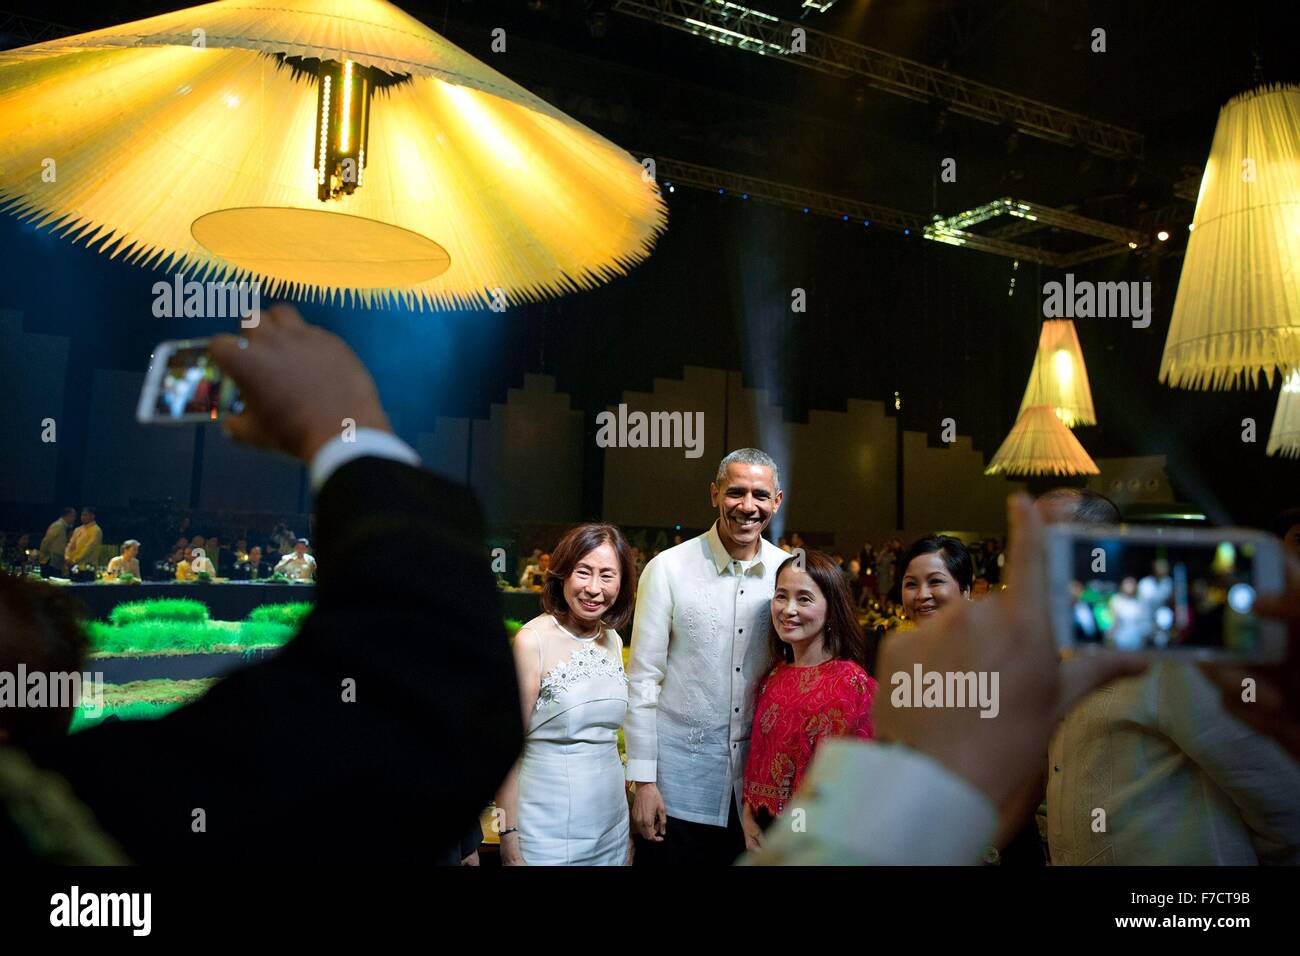 Tragen ein Trachtenhemd Barong Tagalog, stellt US-Präsident Barack Obama für das Selfie mit Gästen beim APEC Führer Dinner 18. November 2015 in Pasay, Metro Manila, Philippinen. Stockfoto